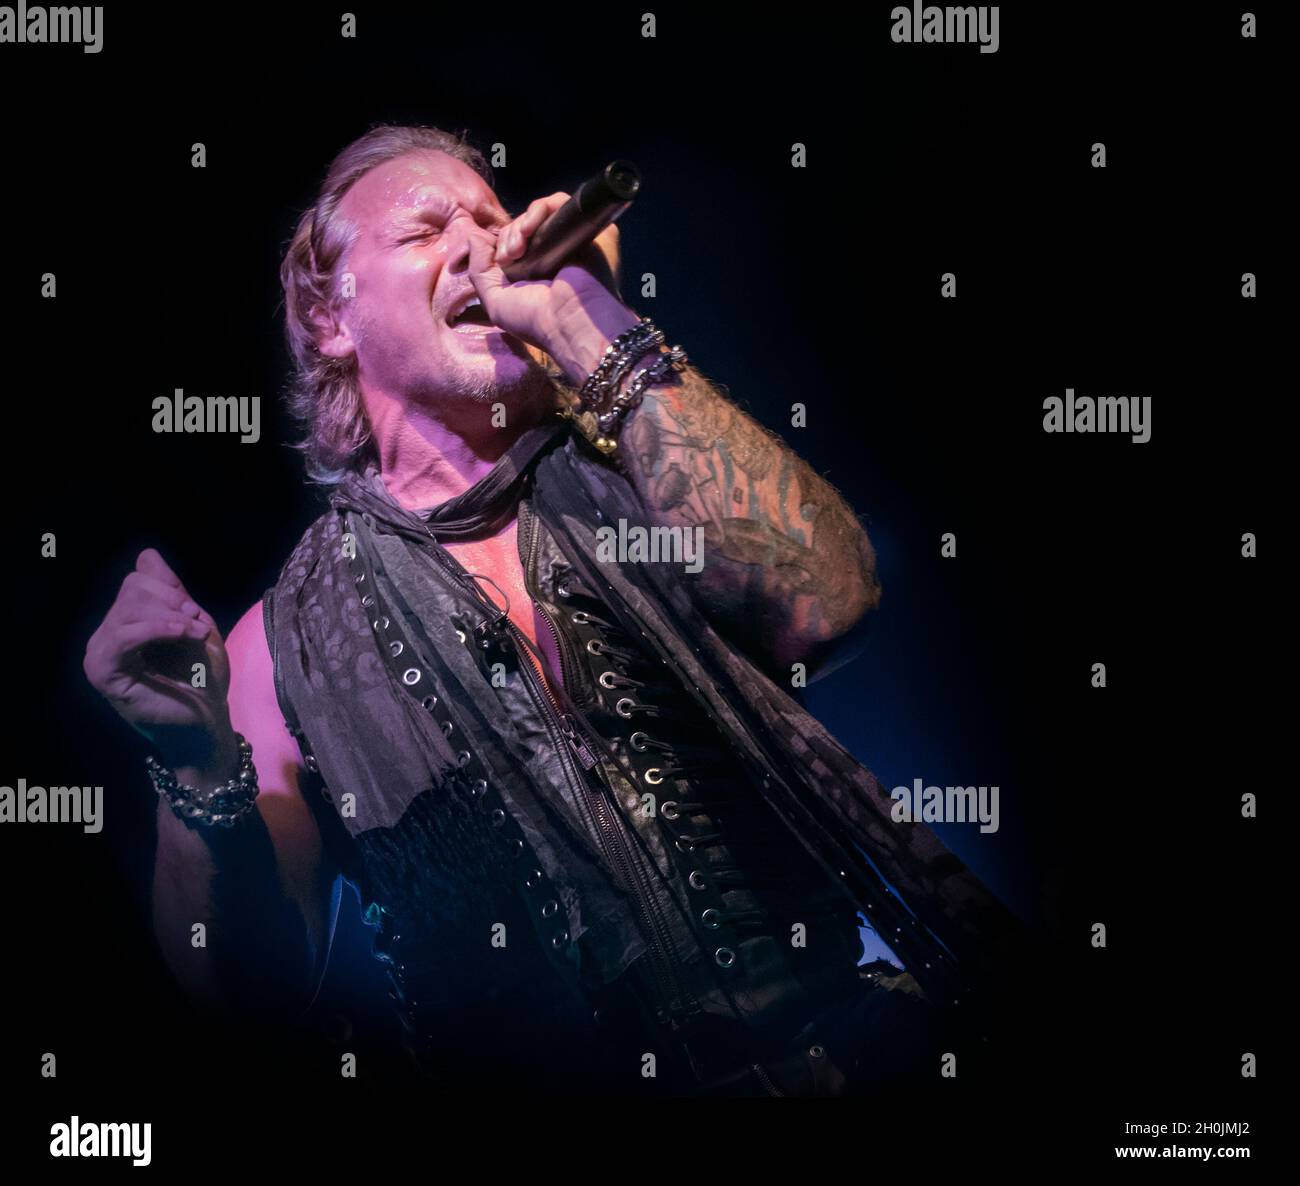 Fozzy (cantante Chris Jericho) vive in concerto presso la Birmingham O2 Academy 2, 27 ottobre 2017. Fotografia di musica dal vivo Foto Stock